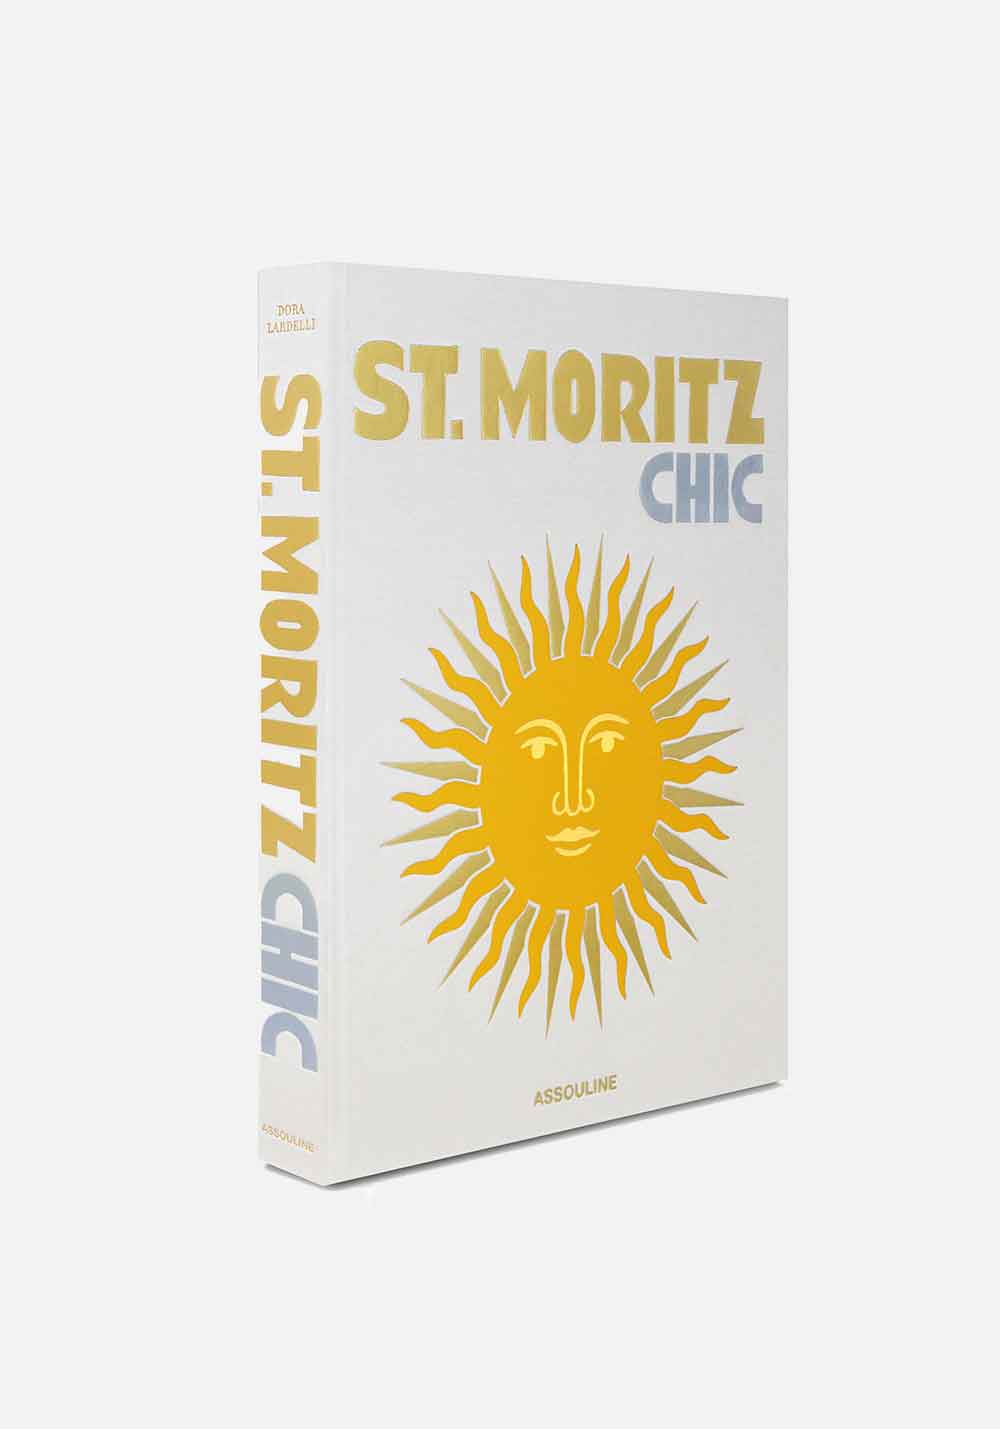 ST. MORITZ CHIC